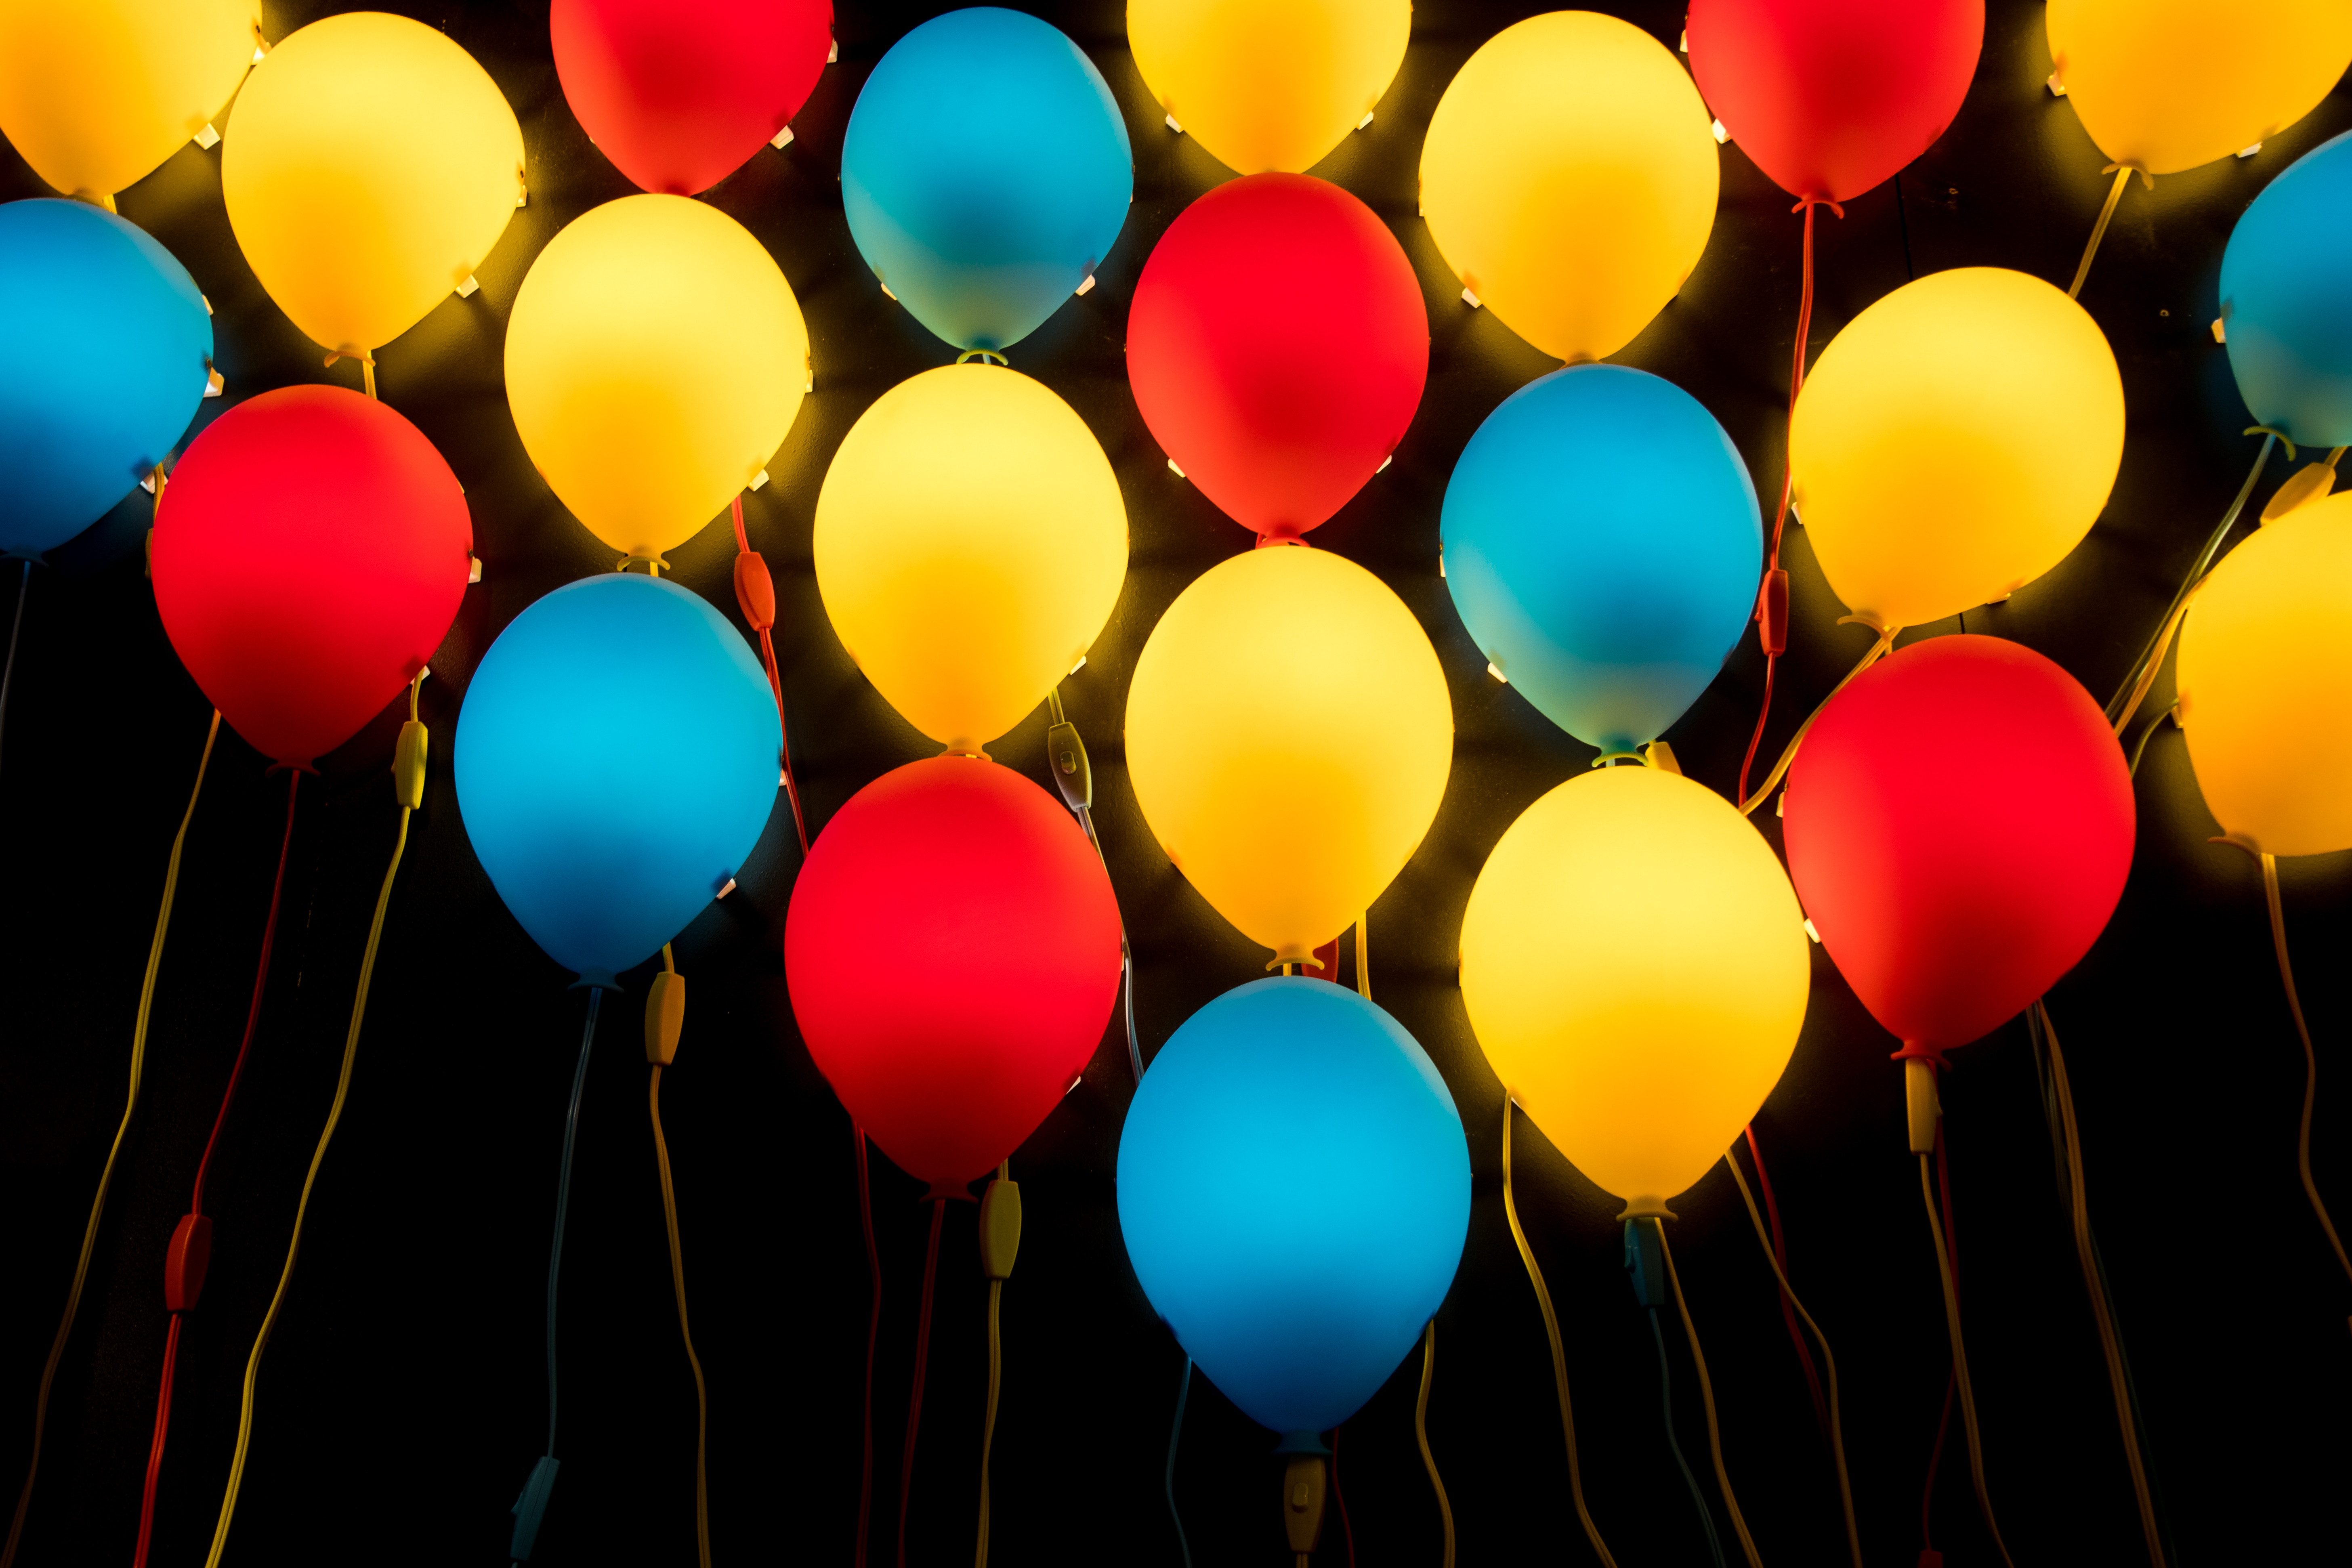 lamps, balloons, miscellaneous, multicolored, miscellanea, motley, lamp, air balloons